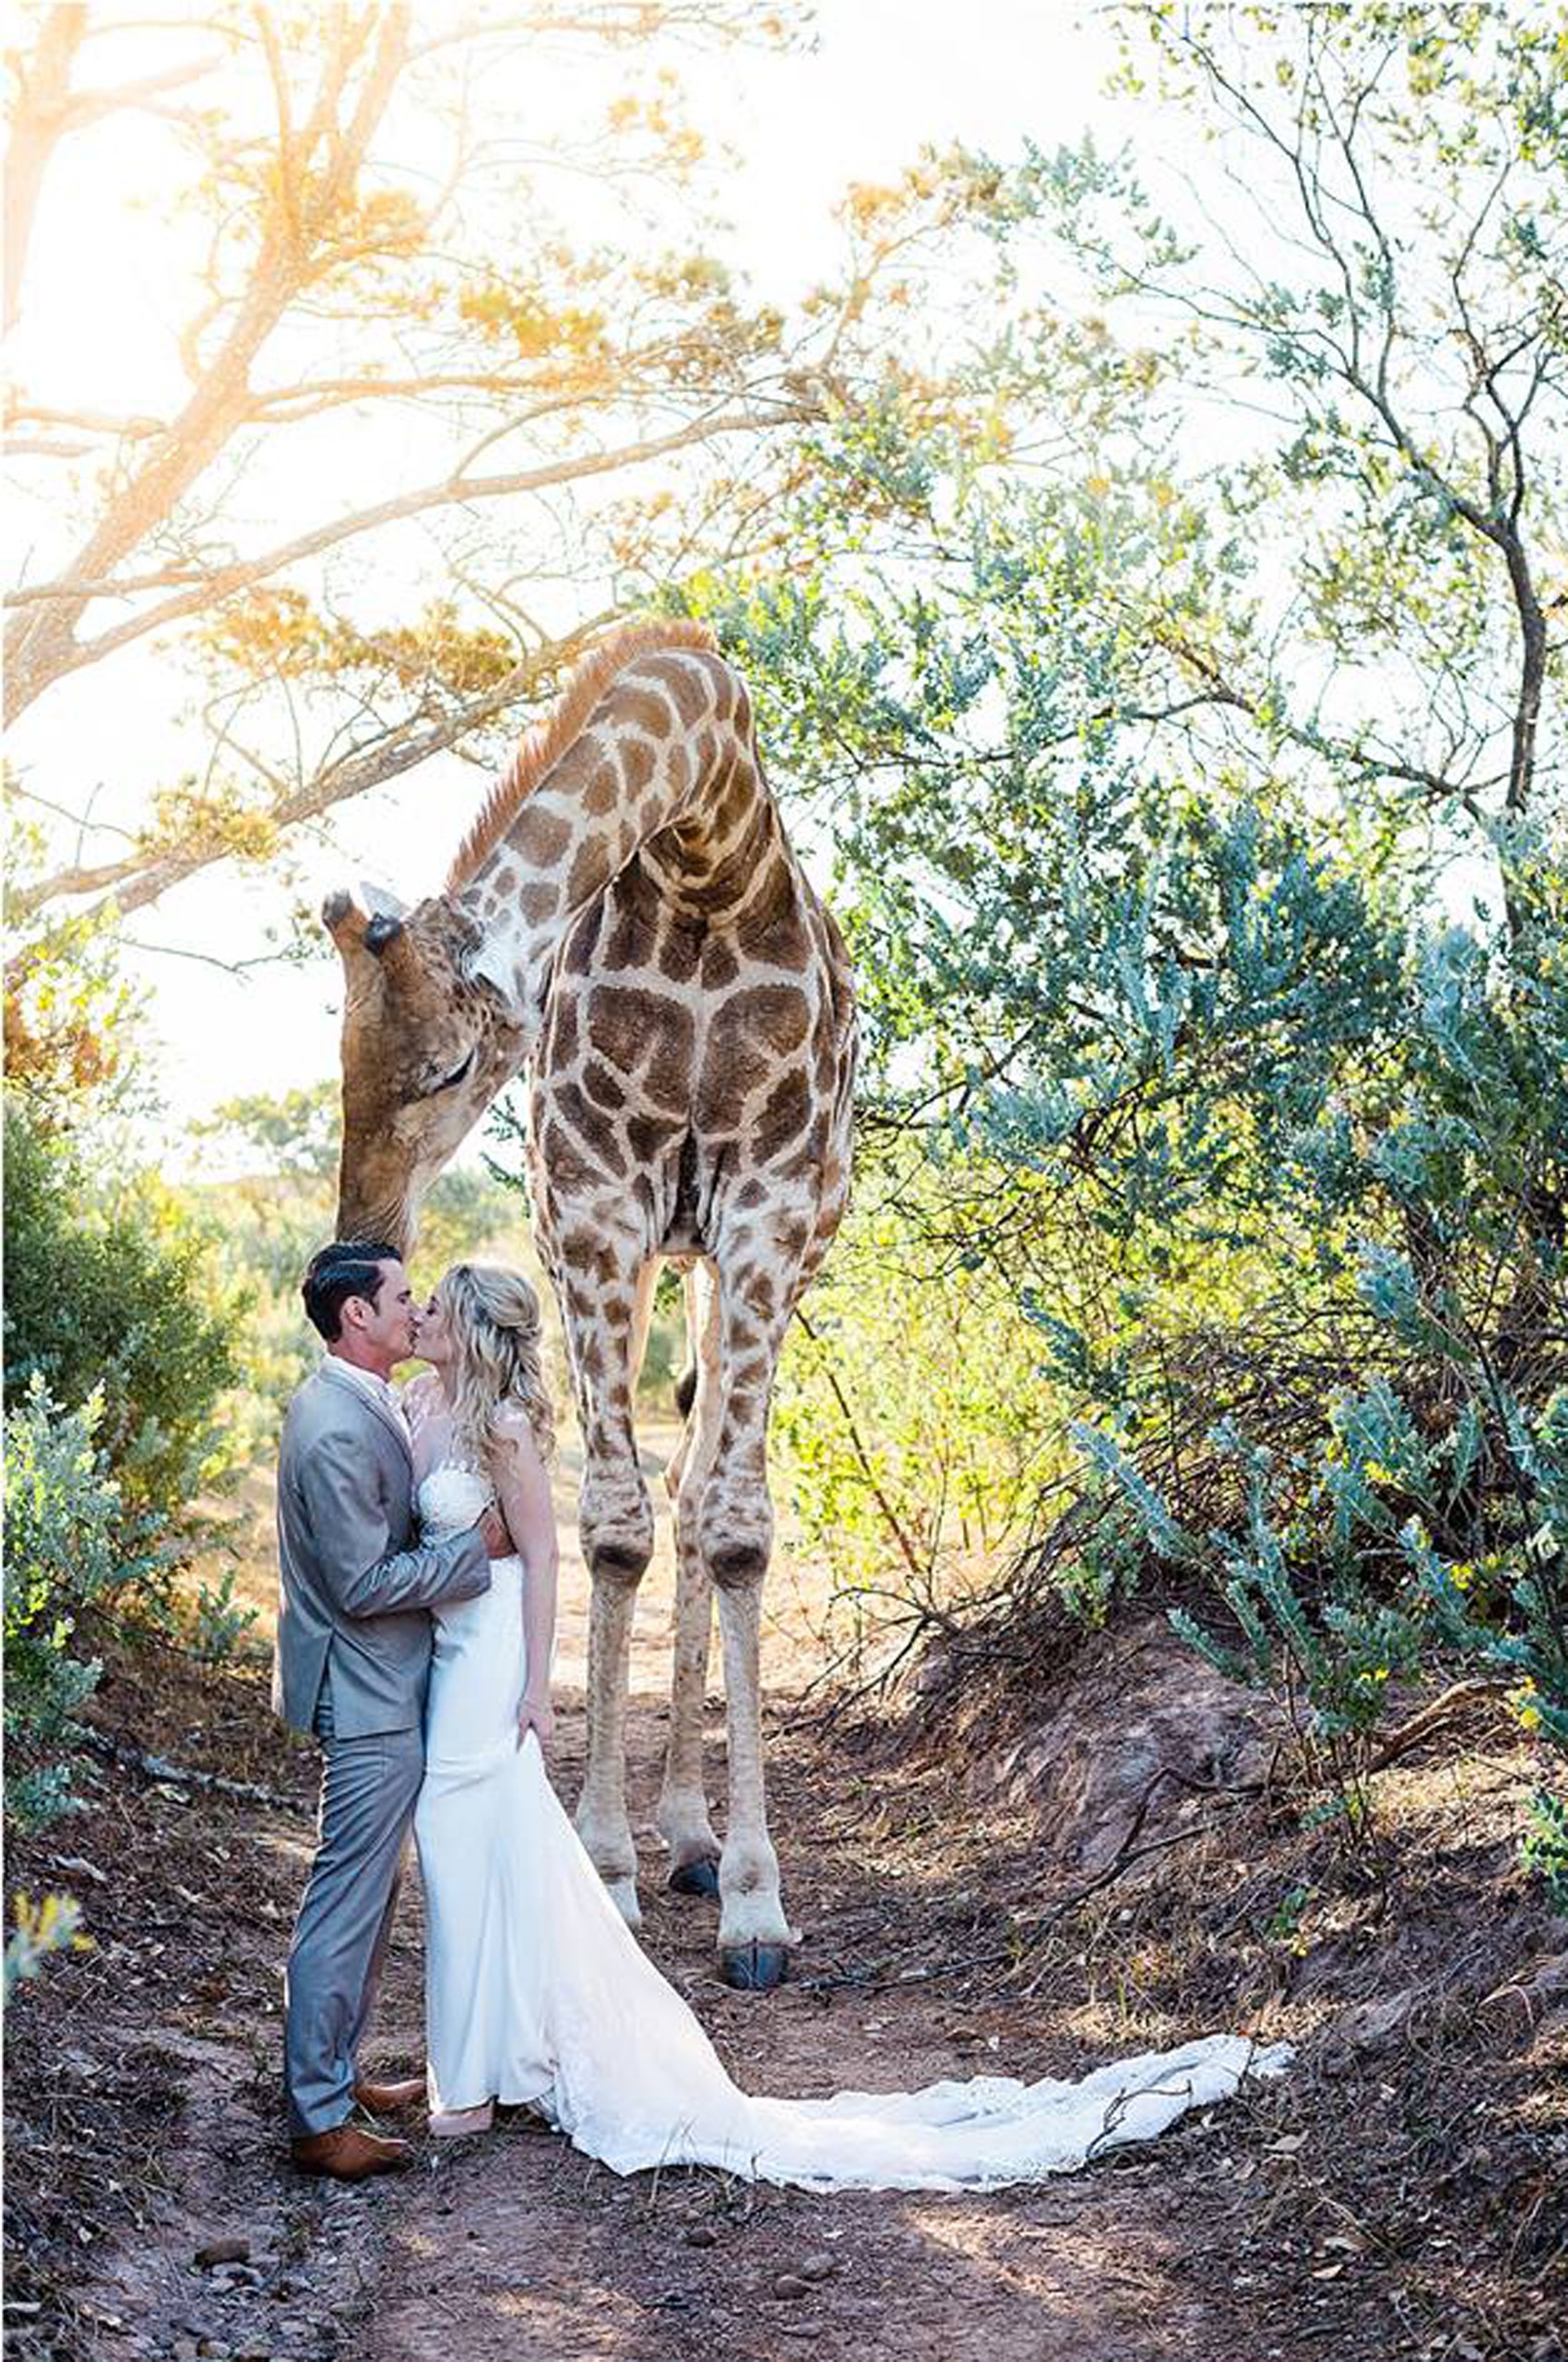 Girafa faz 'photobomb' em foto de casamento na África do Sul